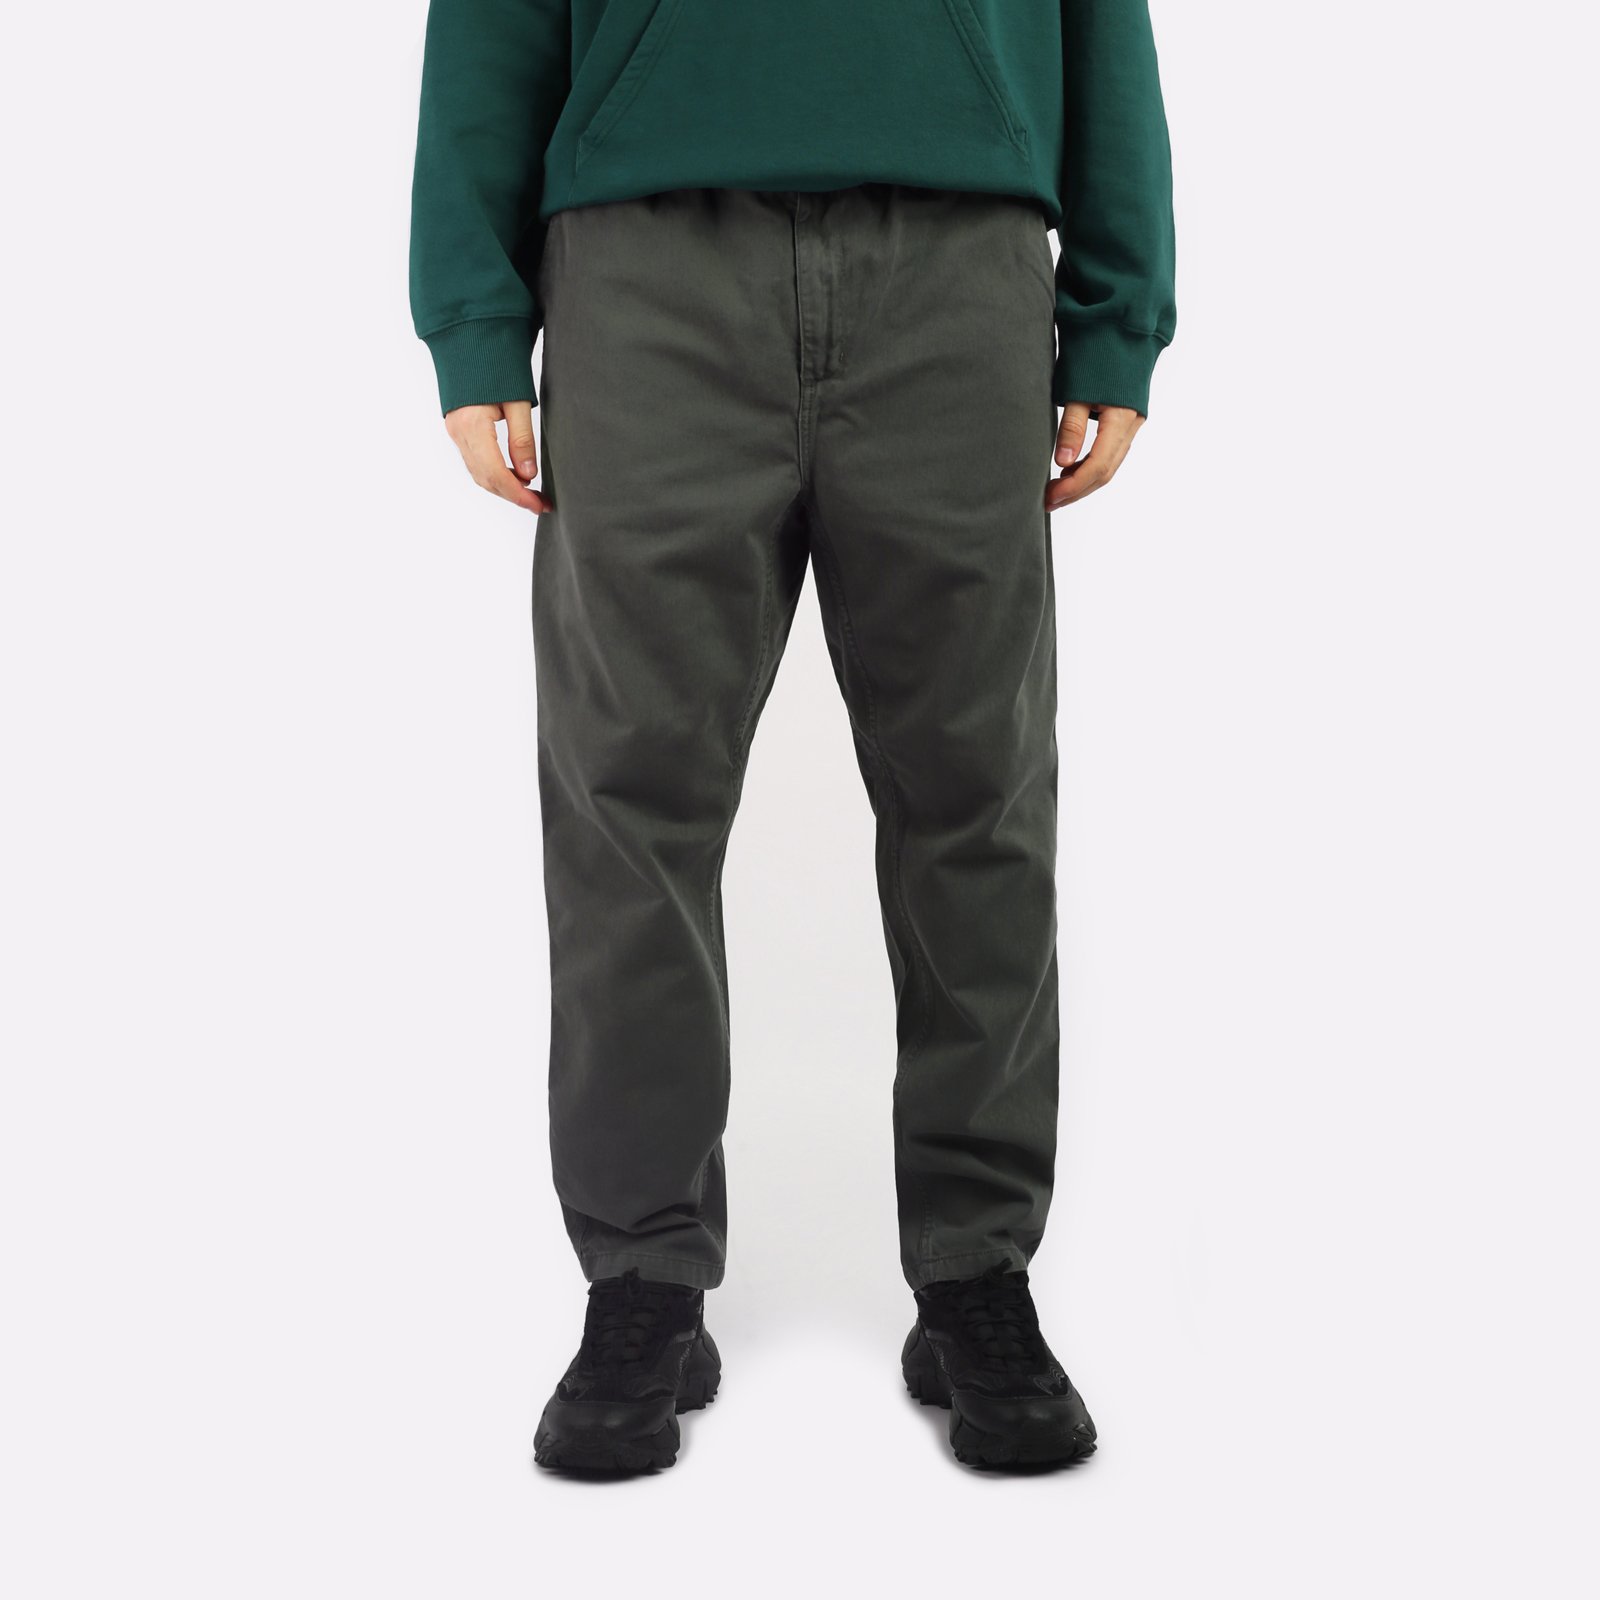 мужские брюки Carhartt WIP Flint Pant  (I029919-jura)  - цена, описание, фото 1